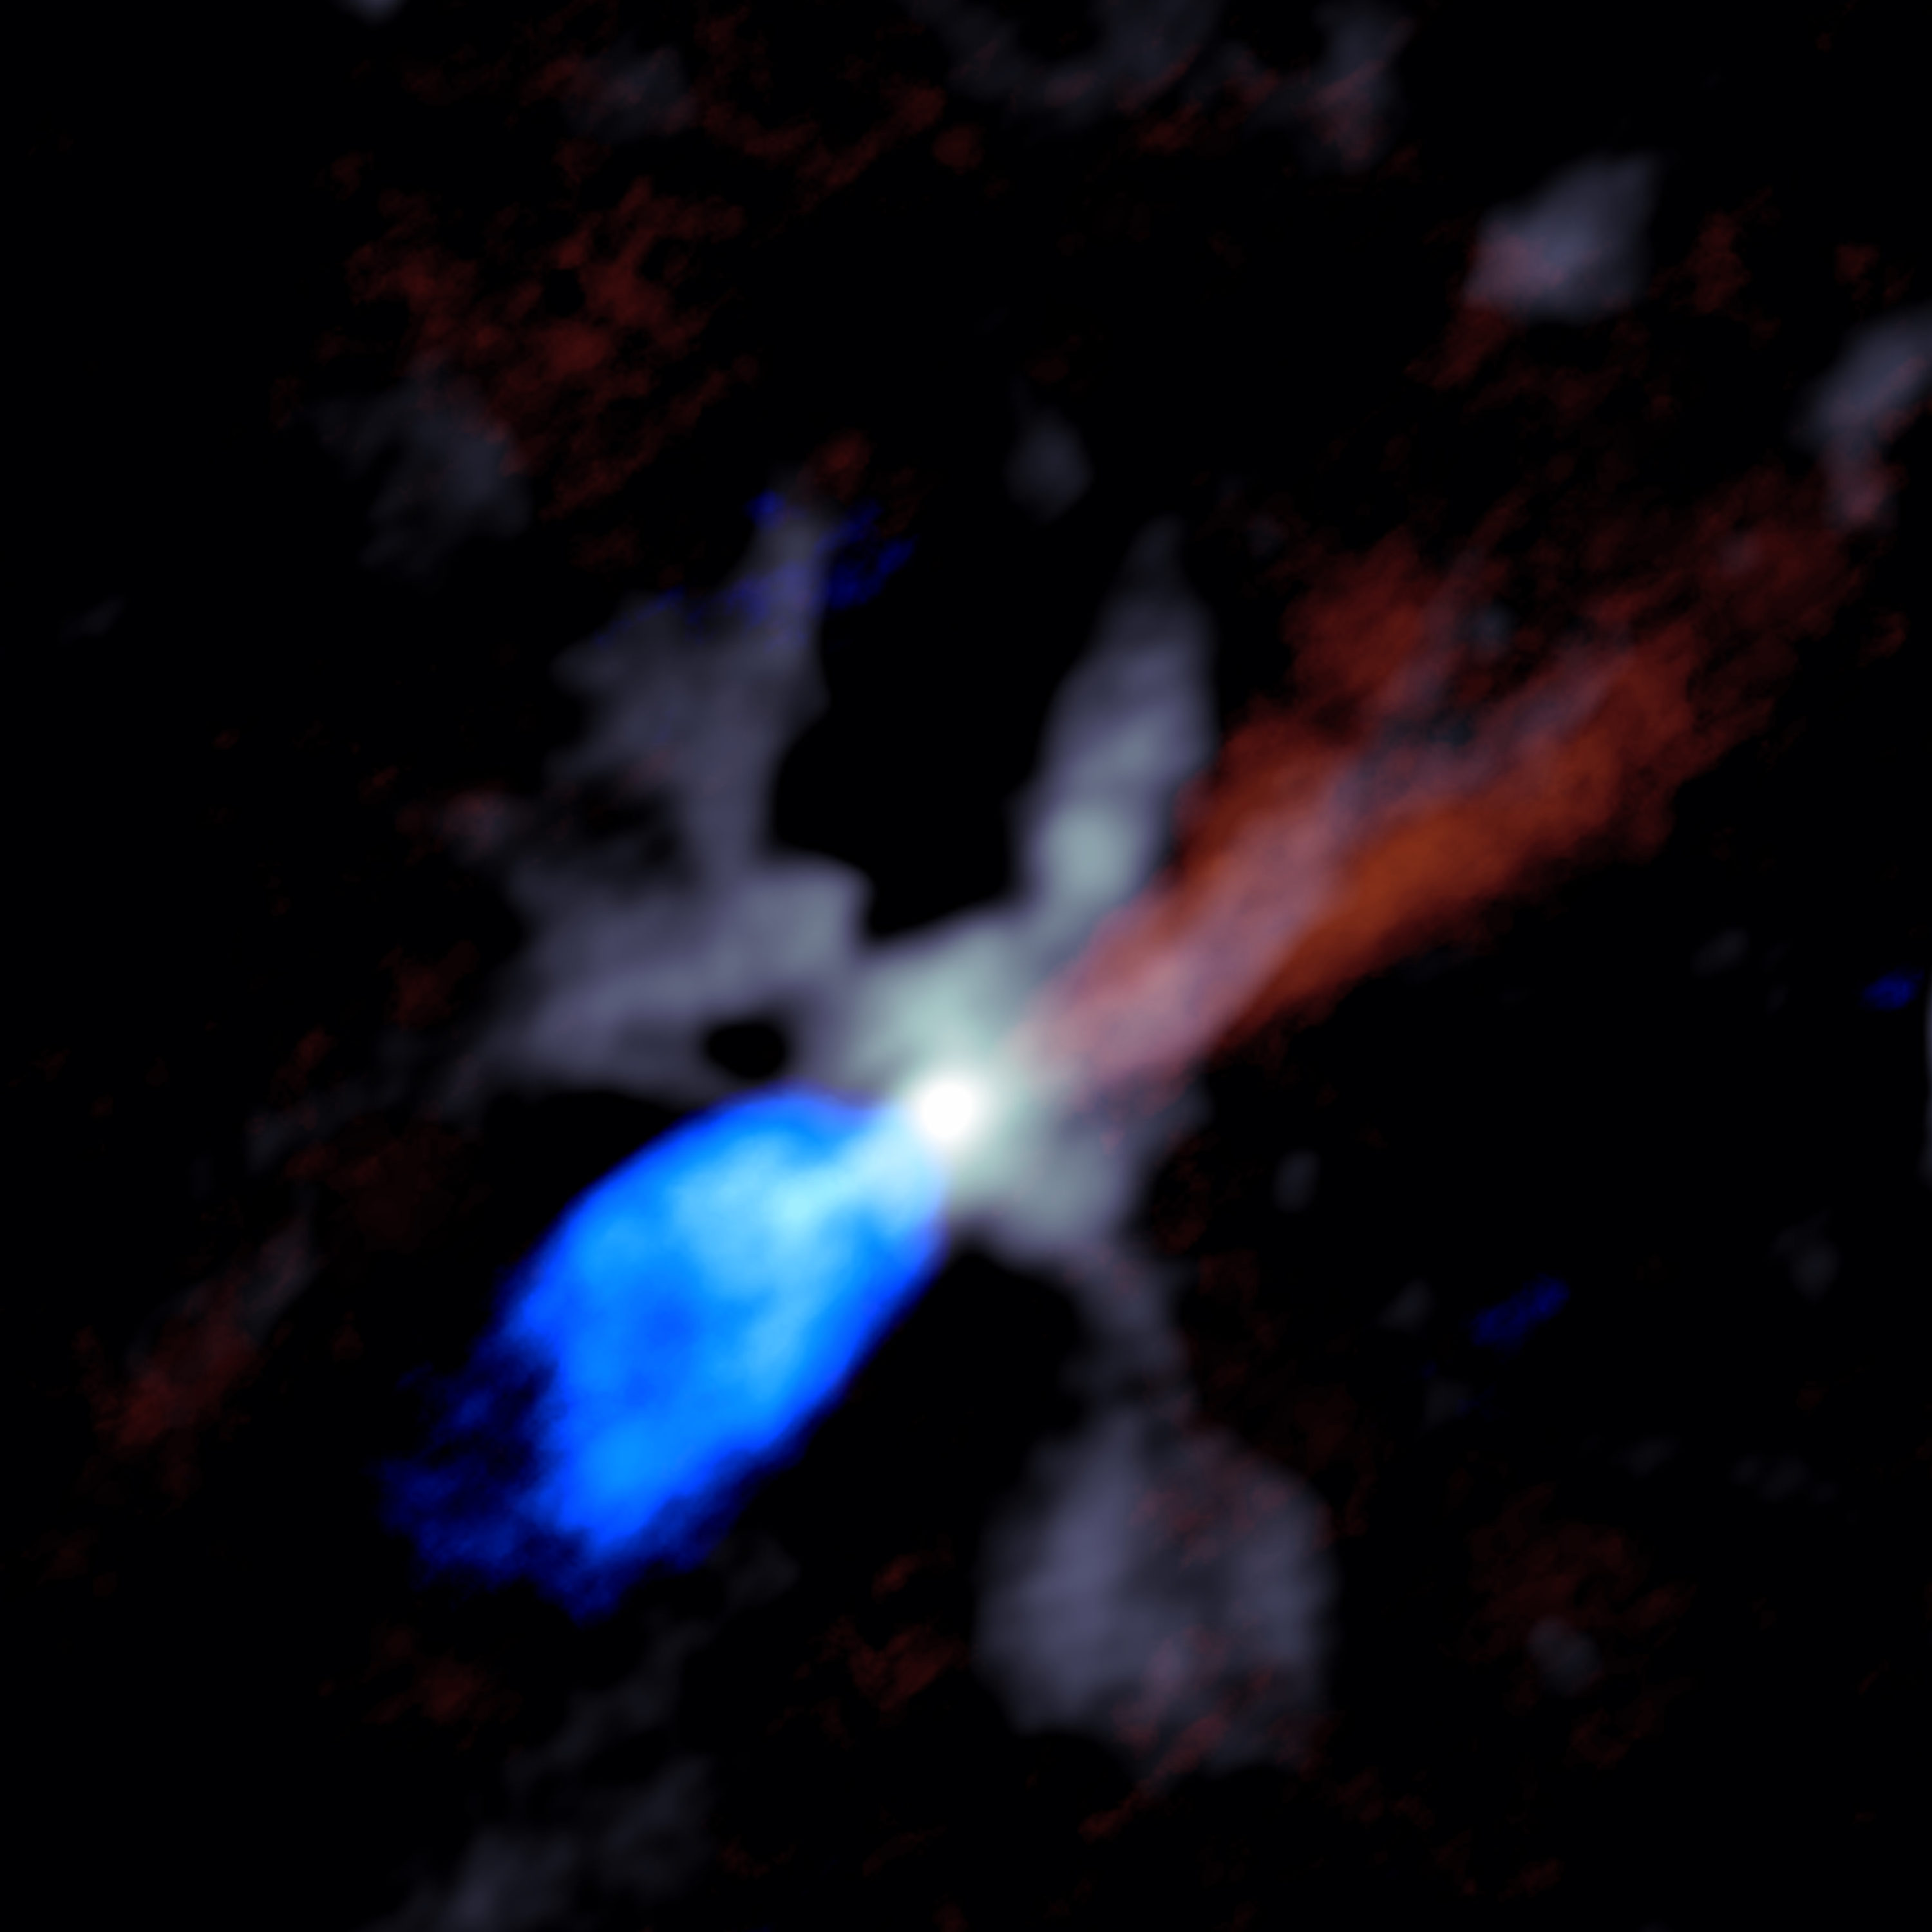 Imagen de ALMA de la caótica escena alrededor de una enorme protoestrella joven, en este caso llamada W51e2e. El gris muestra polvo cerca de la estrella, mientras que el rojo y el azul indican material en los chorros que se mueven rápidamente hacia afuera de la estrella. El rojo muestra material alejándose de la Tierra y material azul moviéndose hacia la Tierra. Crédito: Goddi, Ginsburg, et al., Sophia Dagnello, NRAO / AUI / NSF.